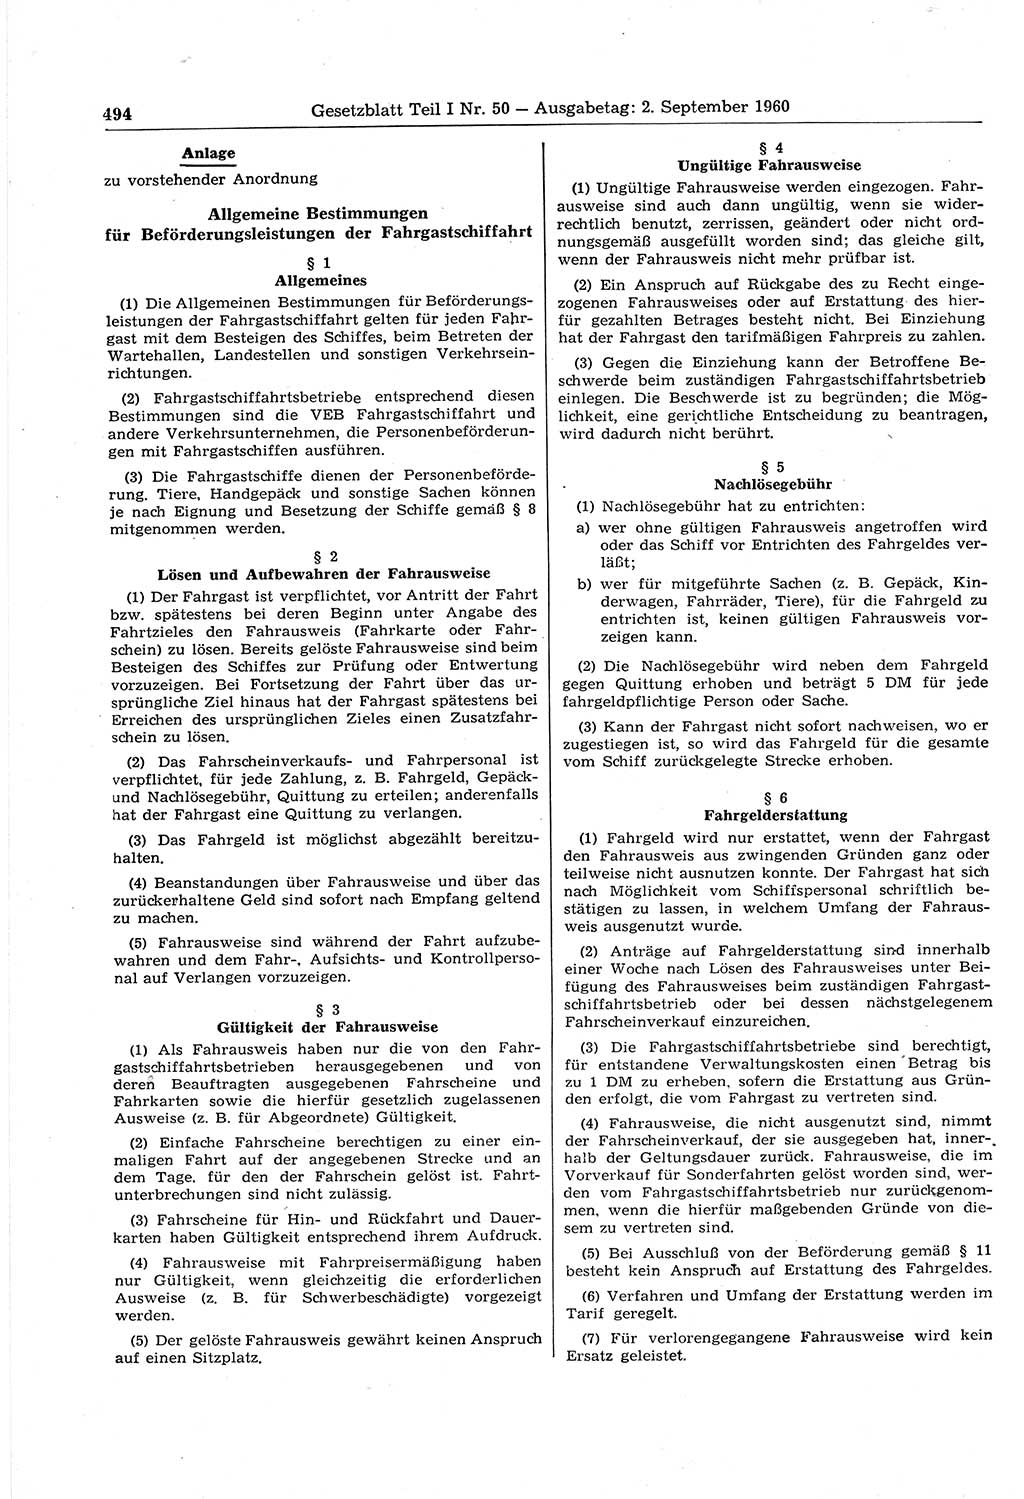 Gesetzblatt (GBl.) der Deutschen Demokratischen Republik (DDR) Teil Ⅰ 1960, Seite 494 (GBl. DDR Ⅰ 1960, S. 494)